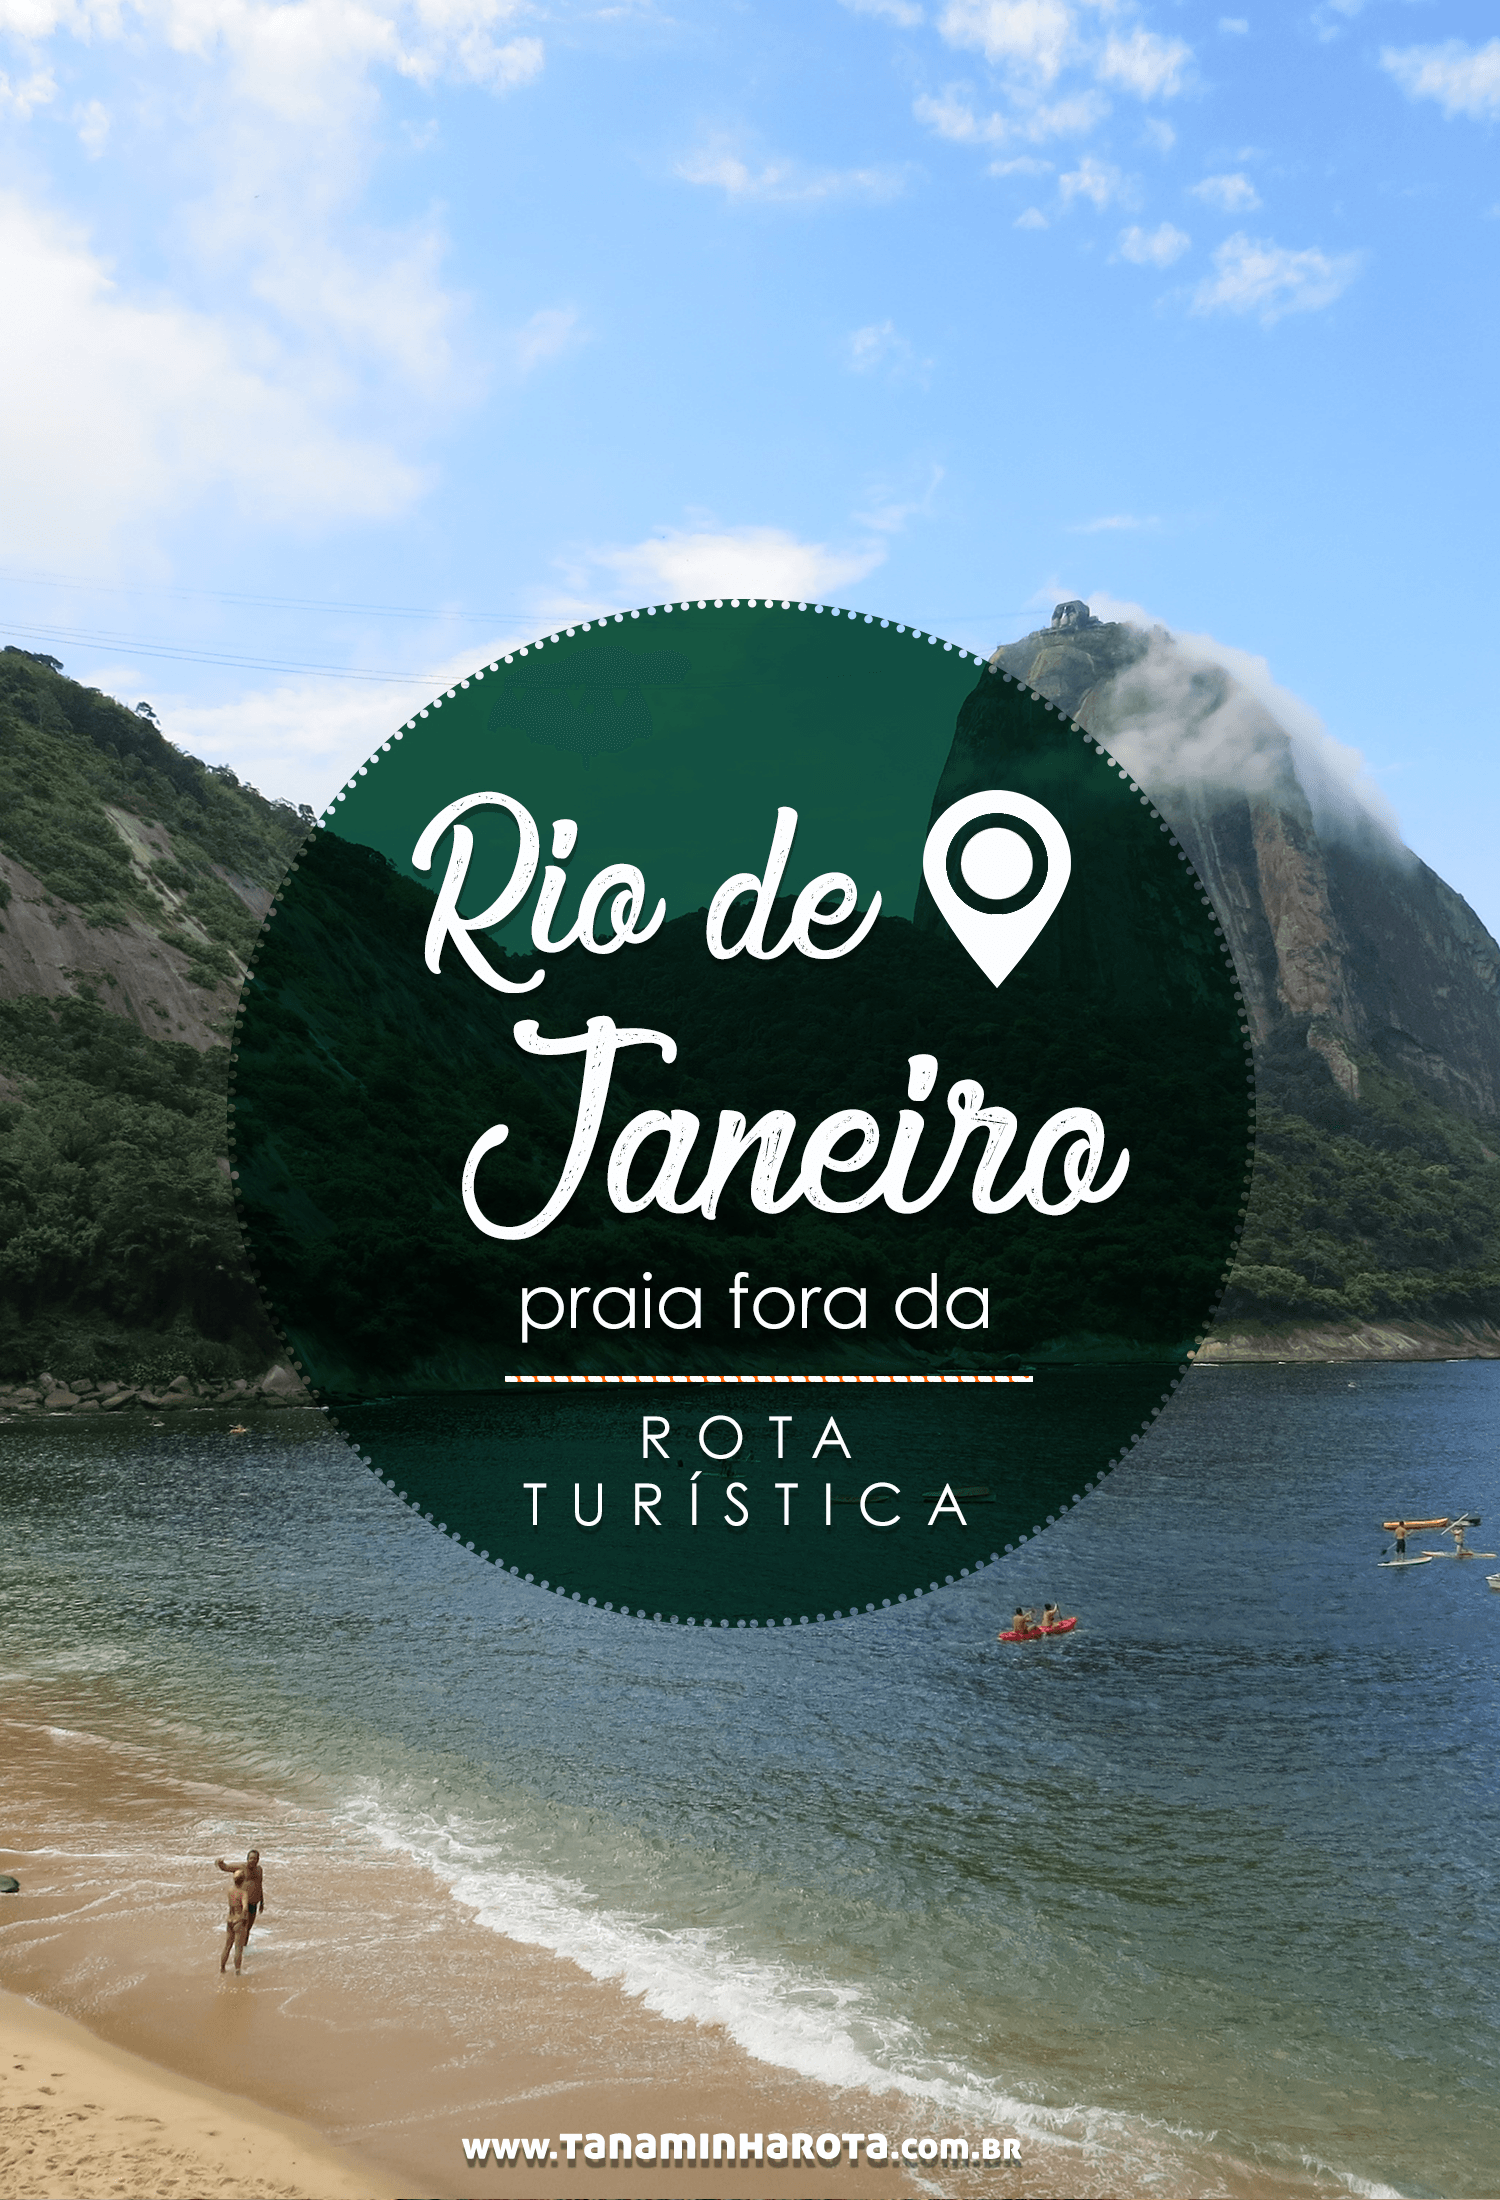 Não sabe o que fazer no Rio de Janeiro? Que tal visitar uma praia fora da rota tradicional? Leia tudo sobre esse passeio diferente no post! #riodejaneiro #praia #brasil